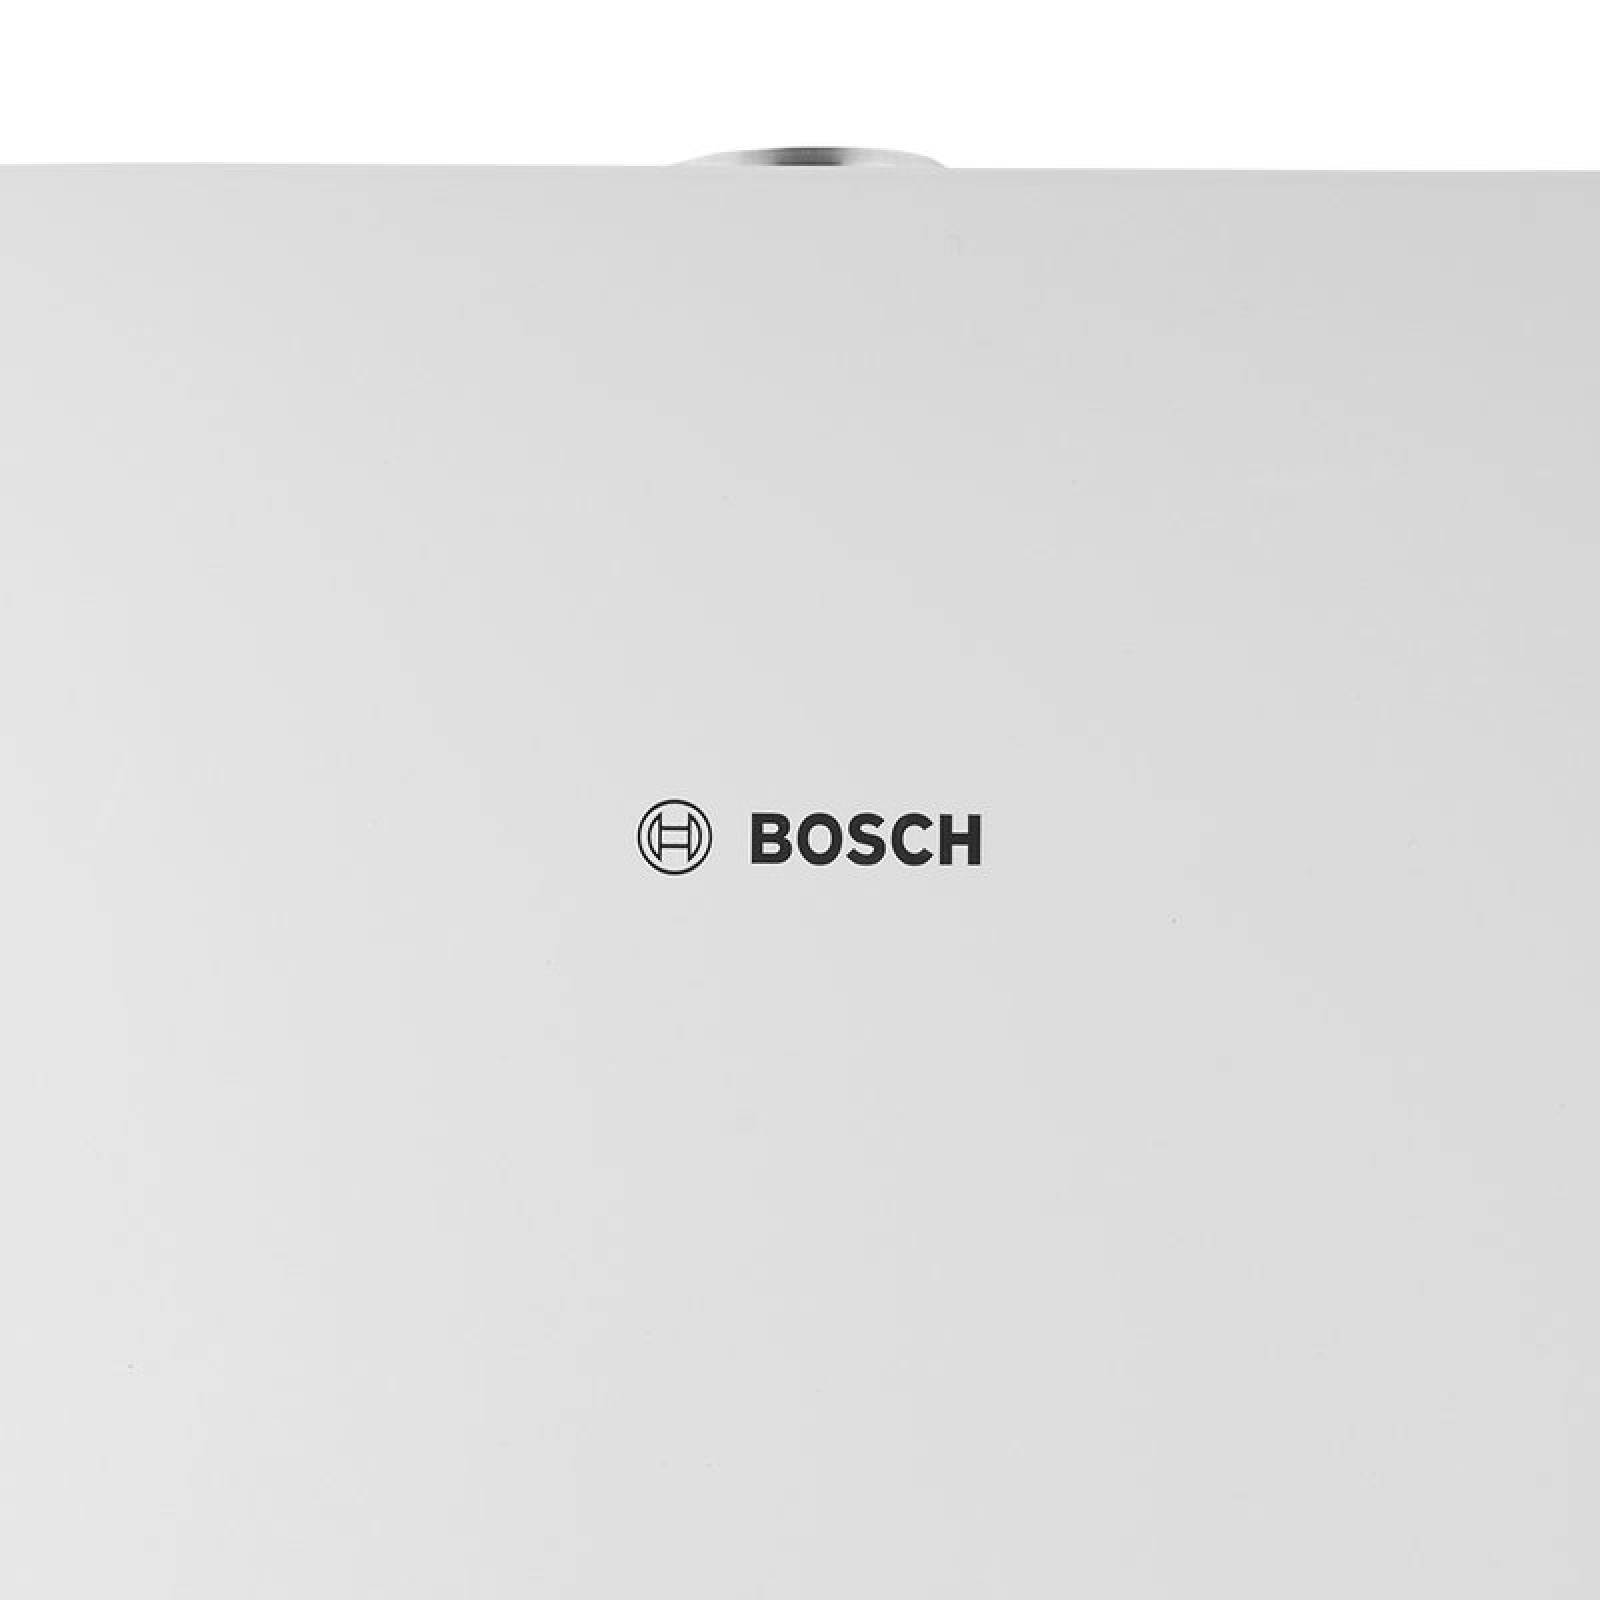 Calentador Paso WiFi 4 Servicios Balanz 20 Gas Natural Bosch